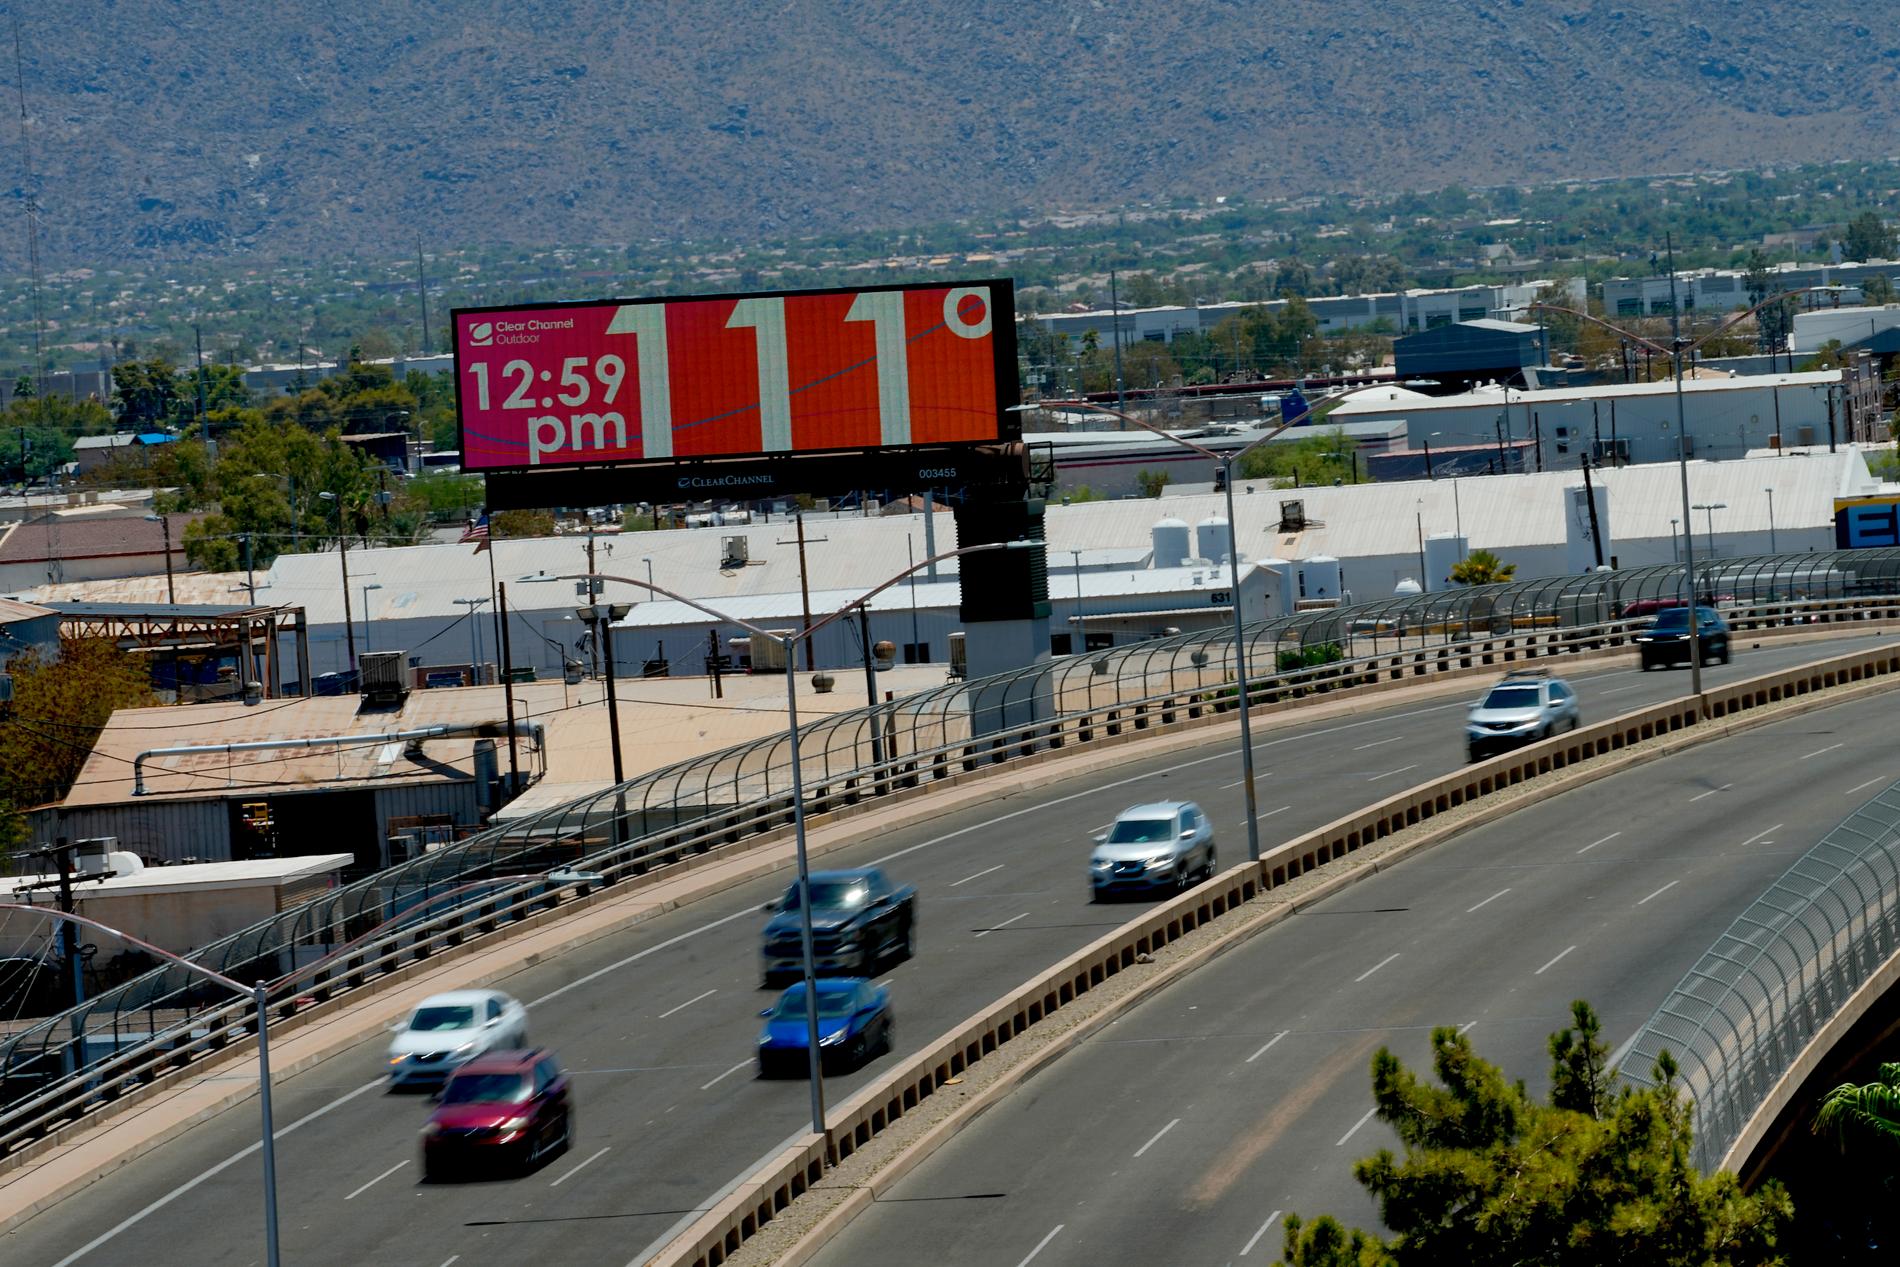 Temperaturen visas vid motorvägen i Phoenix, fahrenheit 111 som motsvarar ungefär 43 grader.